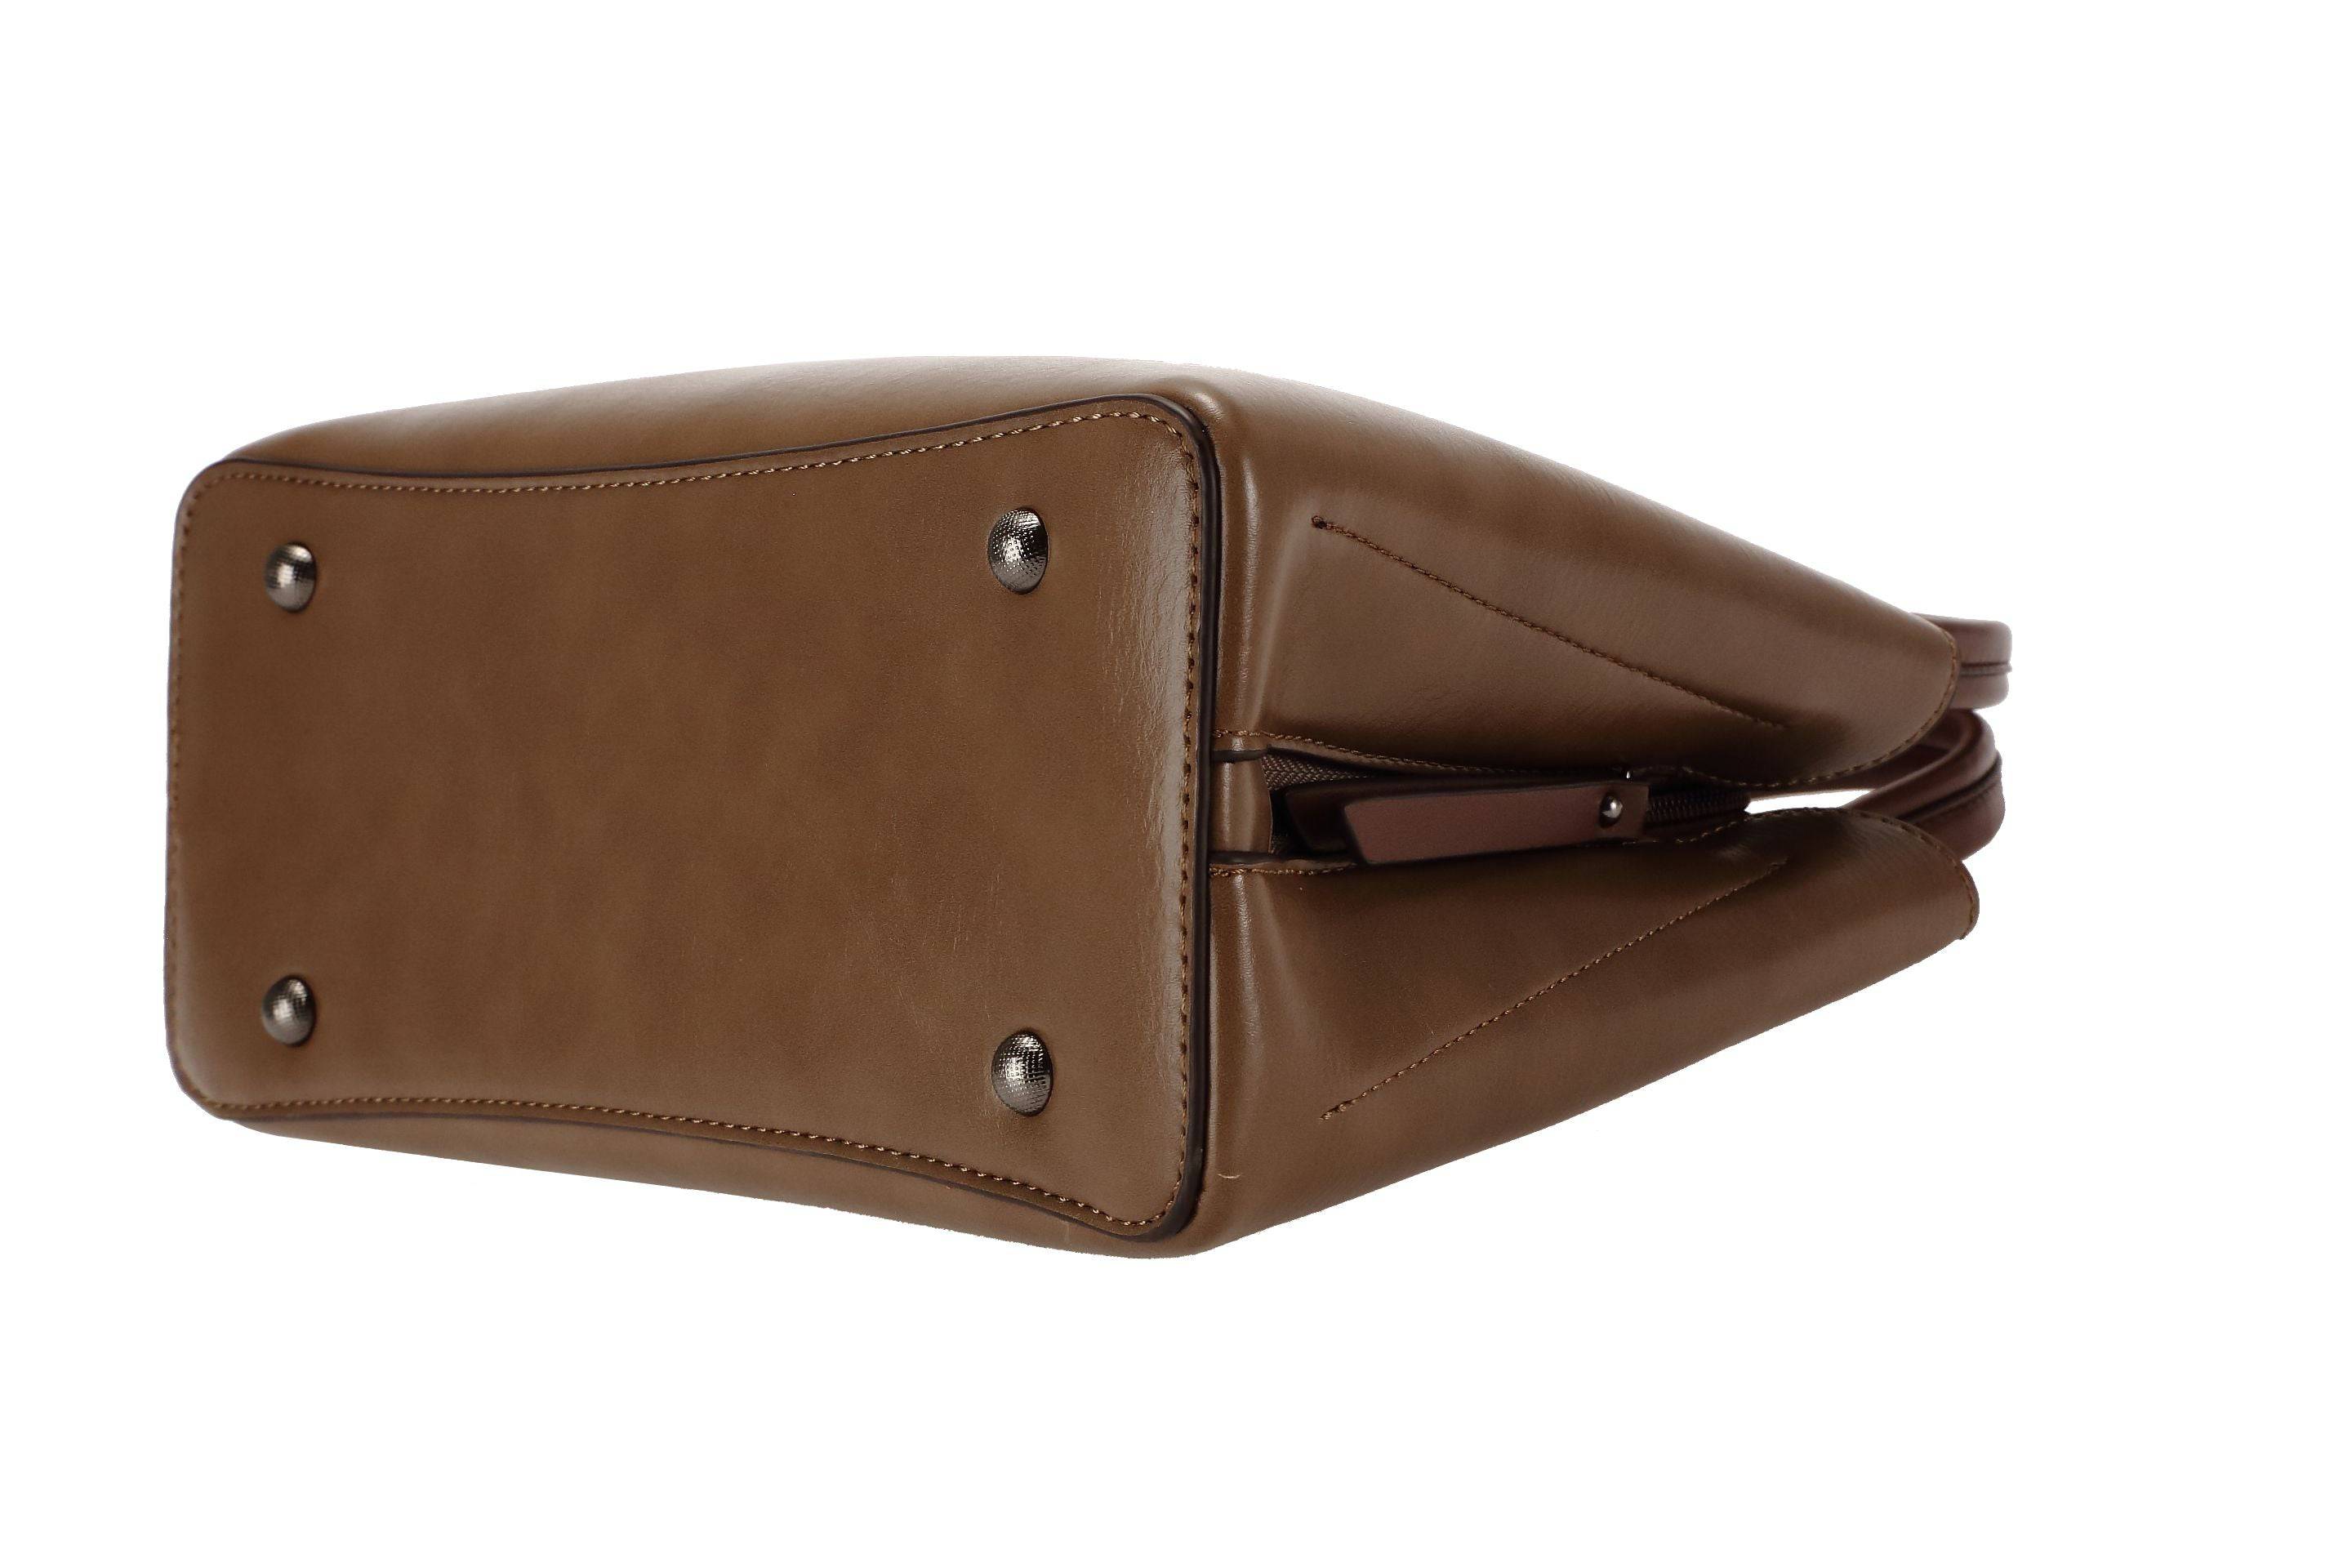 حقيبة يد نسائية باللون البنى الفاتح مربعة الشكل كبيرة الحجم بيد وحزام طويل لحملها على الكتف - KSA